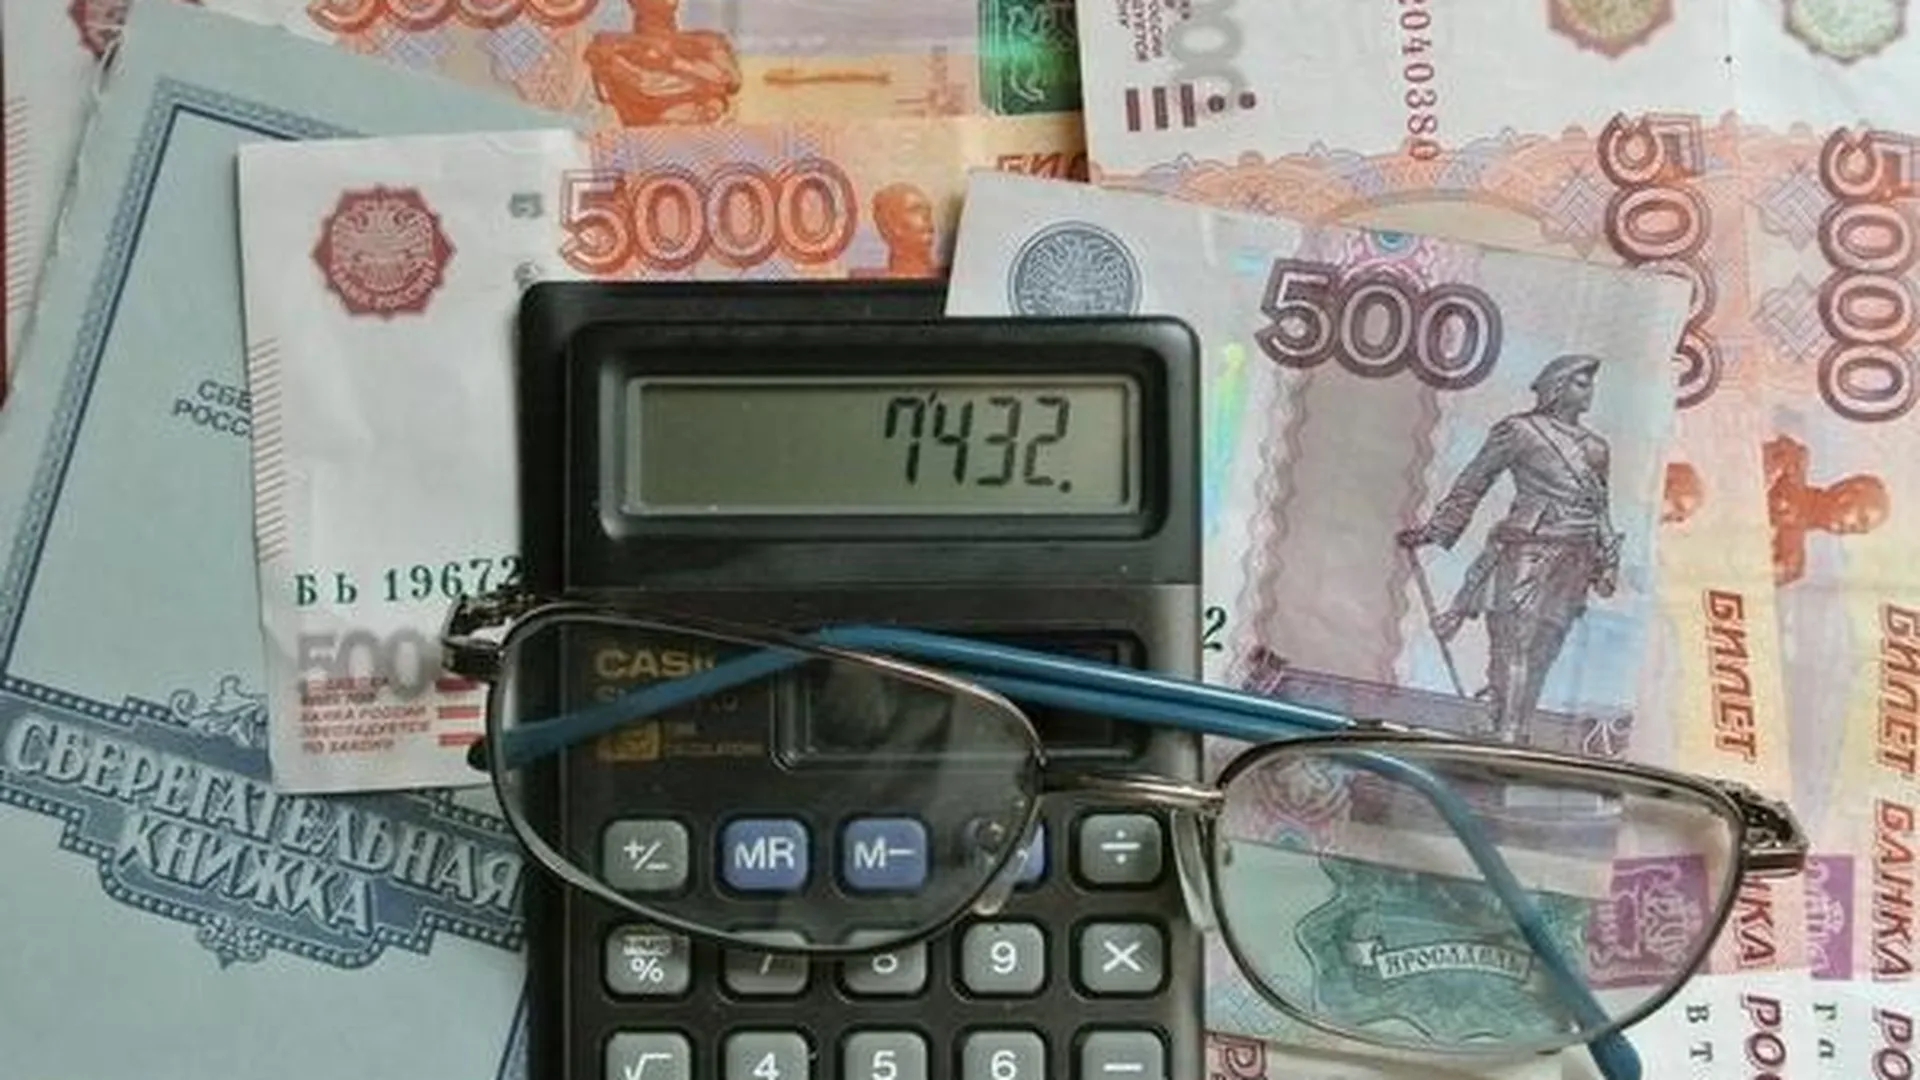 Жителям новостроек в Котельниках УК вернула более 500 тыс рублей